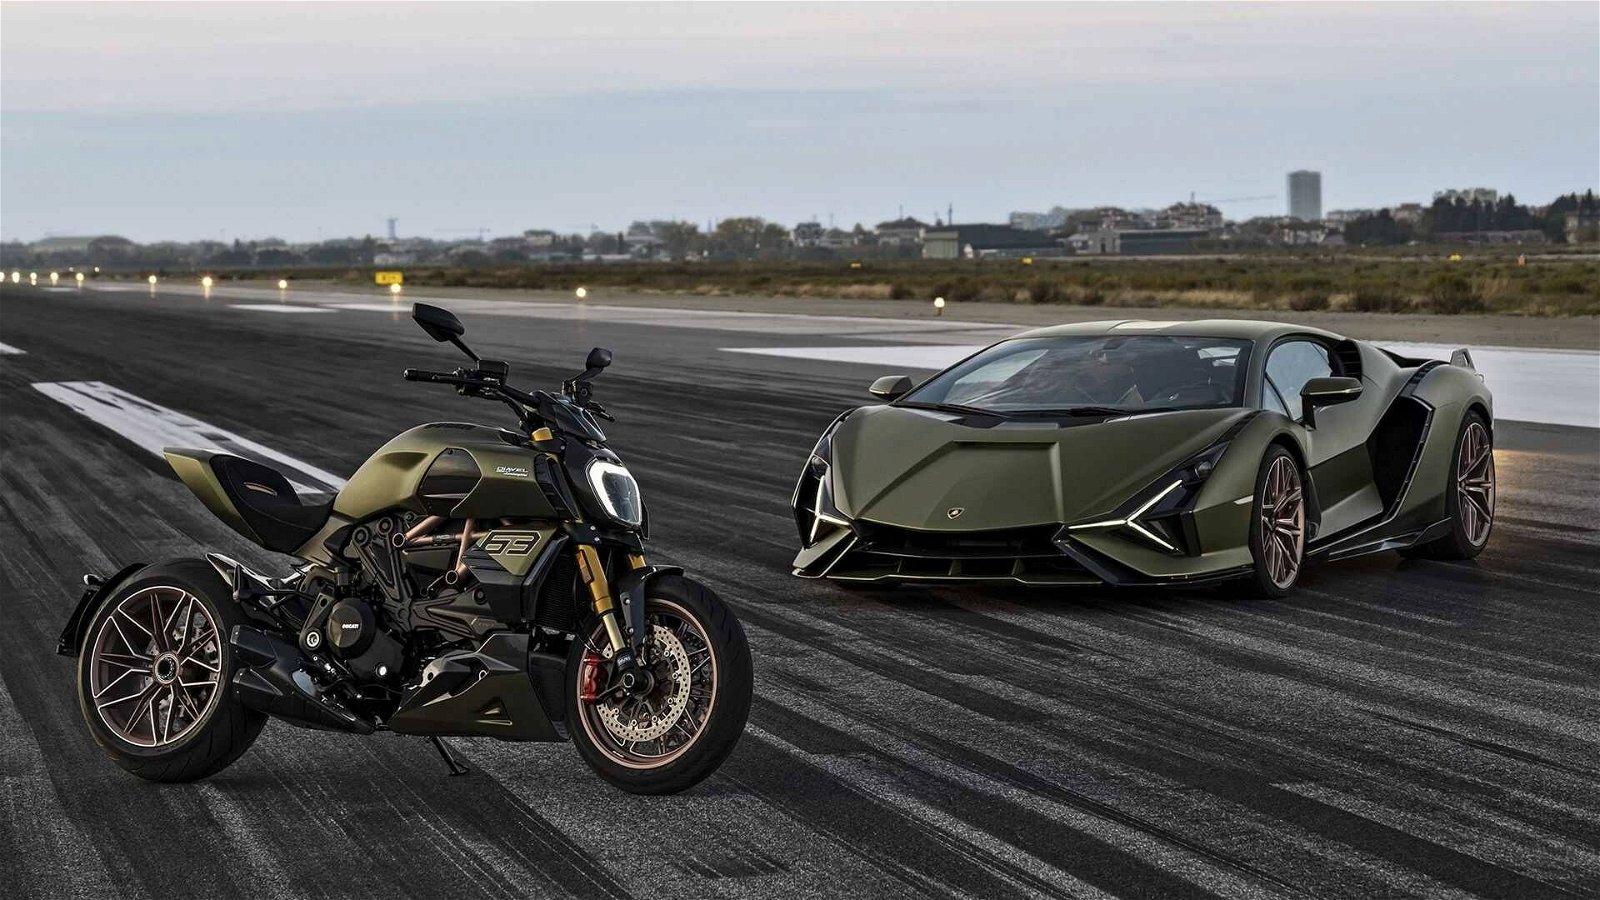 Immagine di Ducati e Lamborghini, nasce un'edizione speciale STO